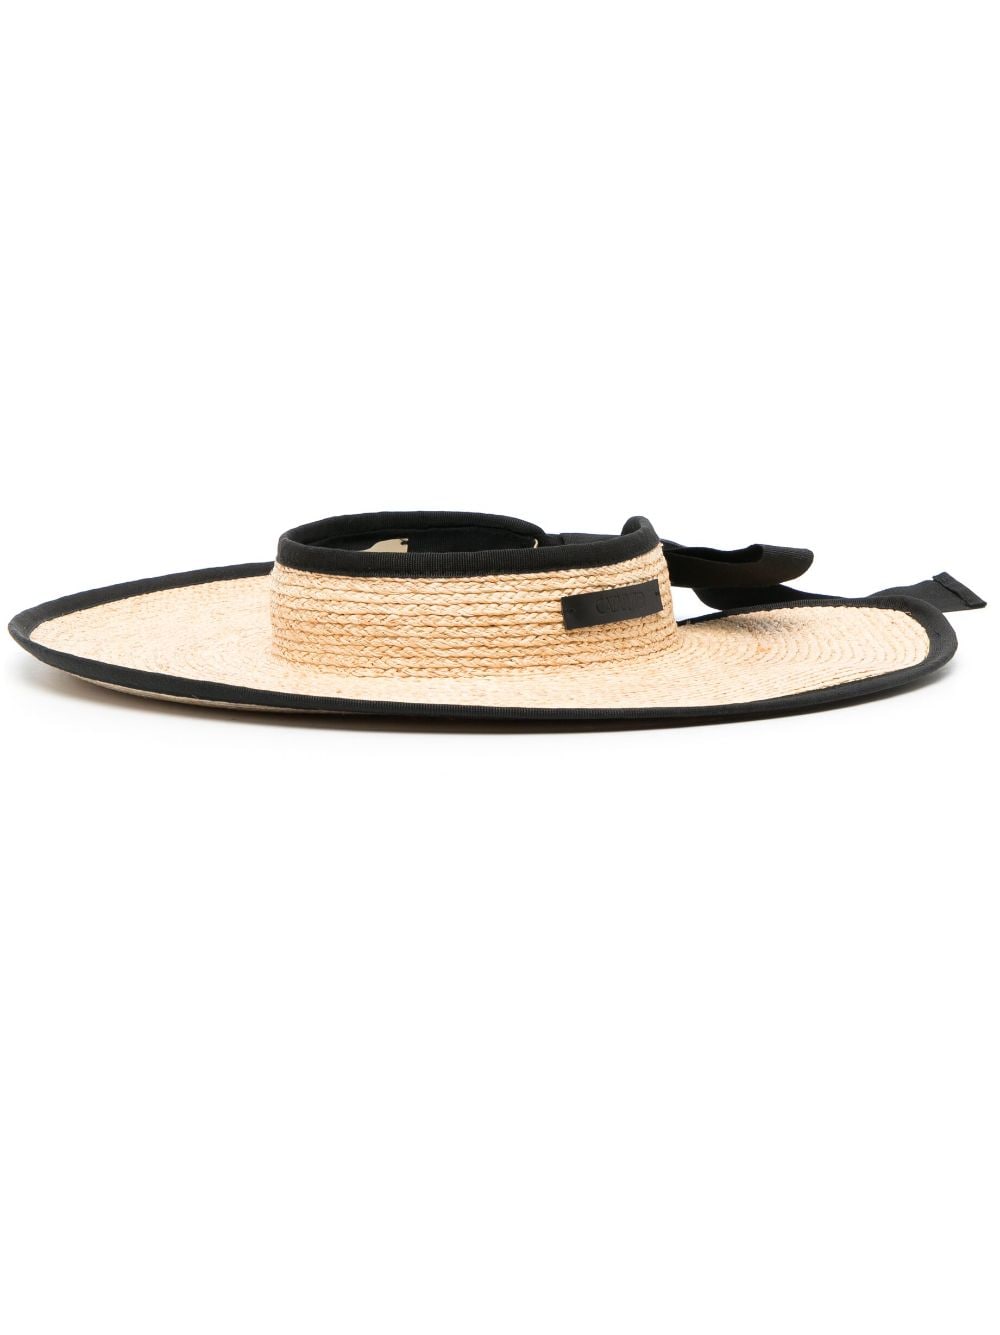 catarzi - knotted ribbon-band raffia visor - women - Raffia - 57 - Neutrals